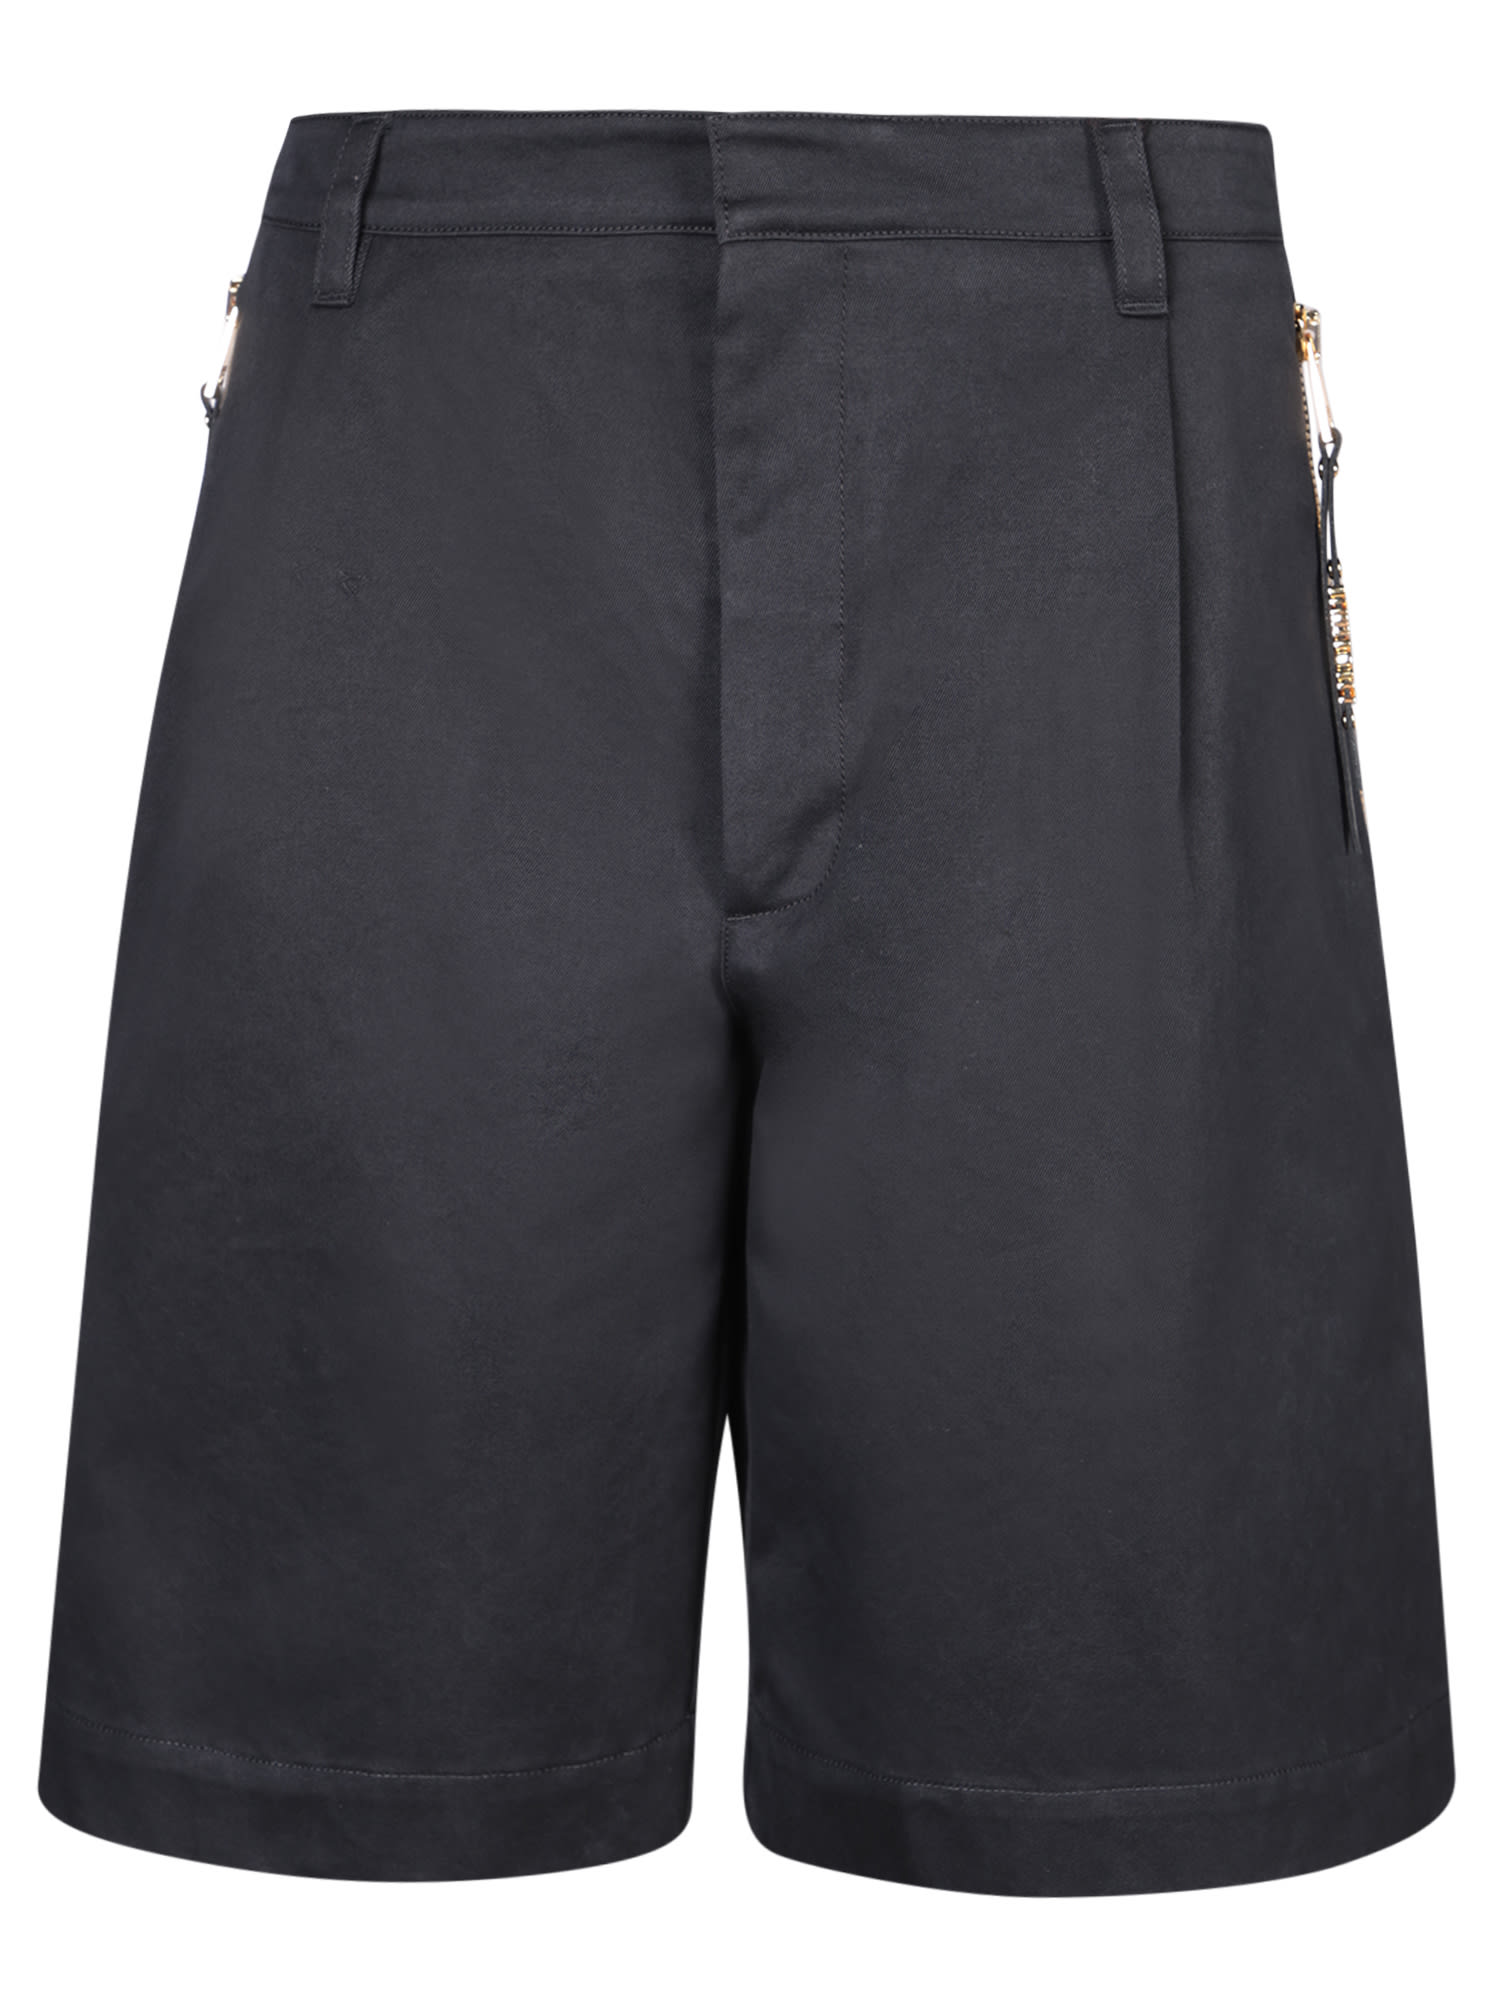 Bull Black Cotton Bermuda Shorts